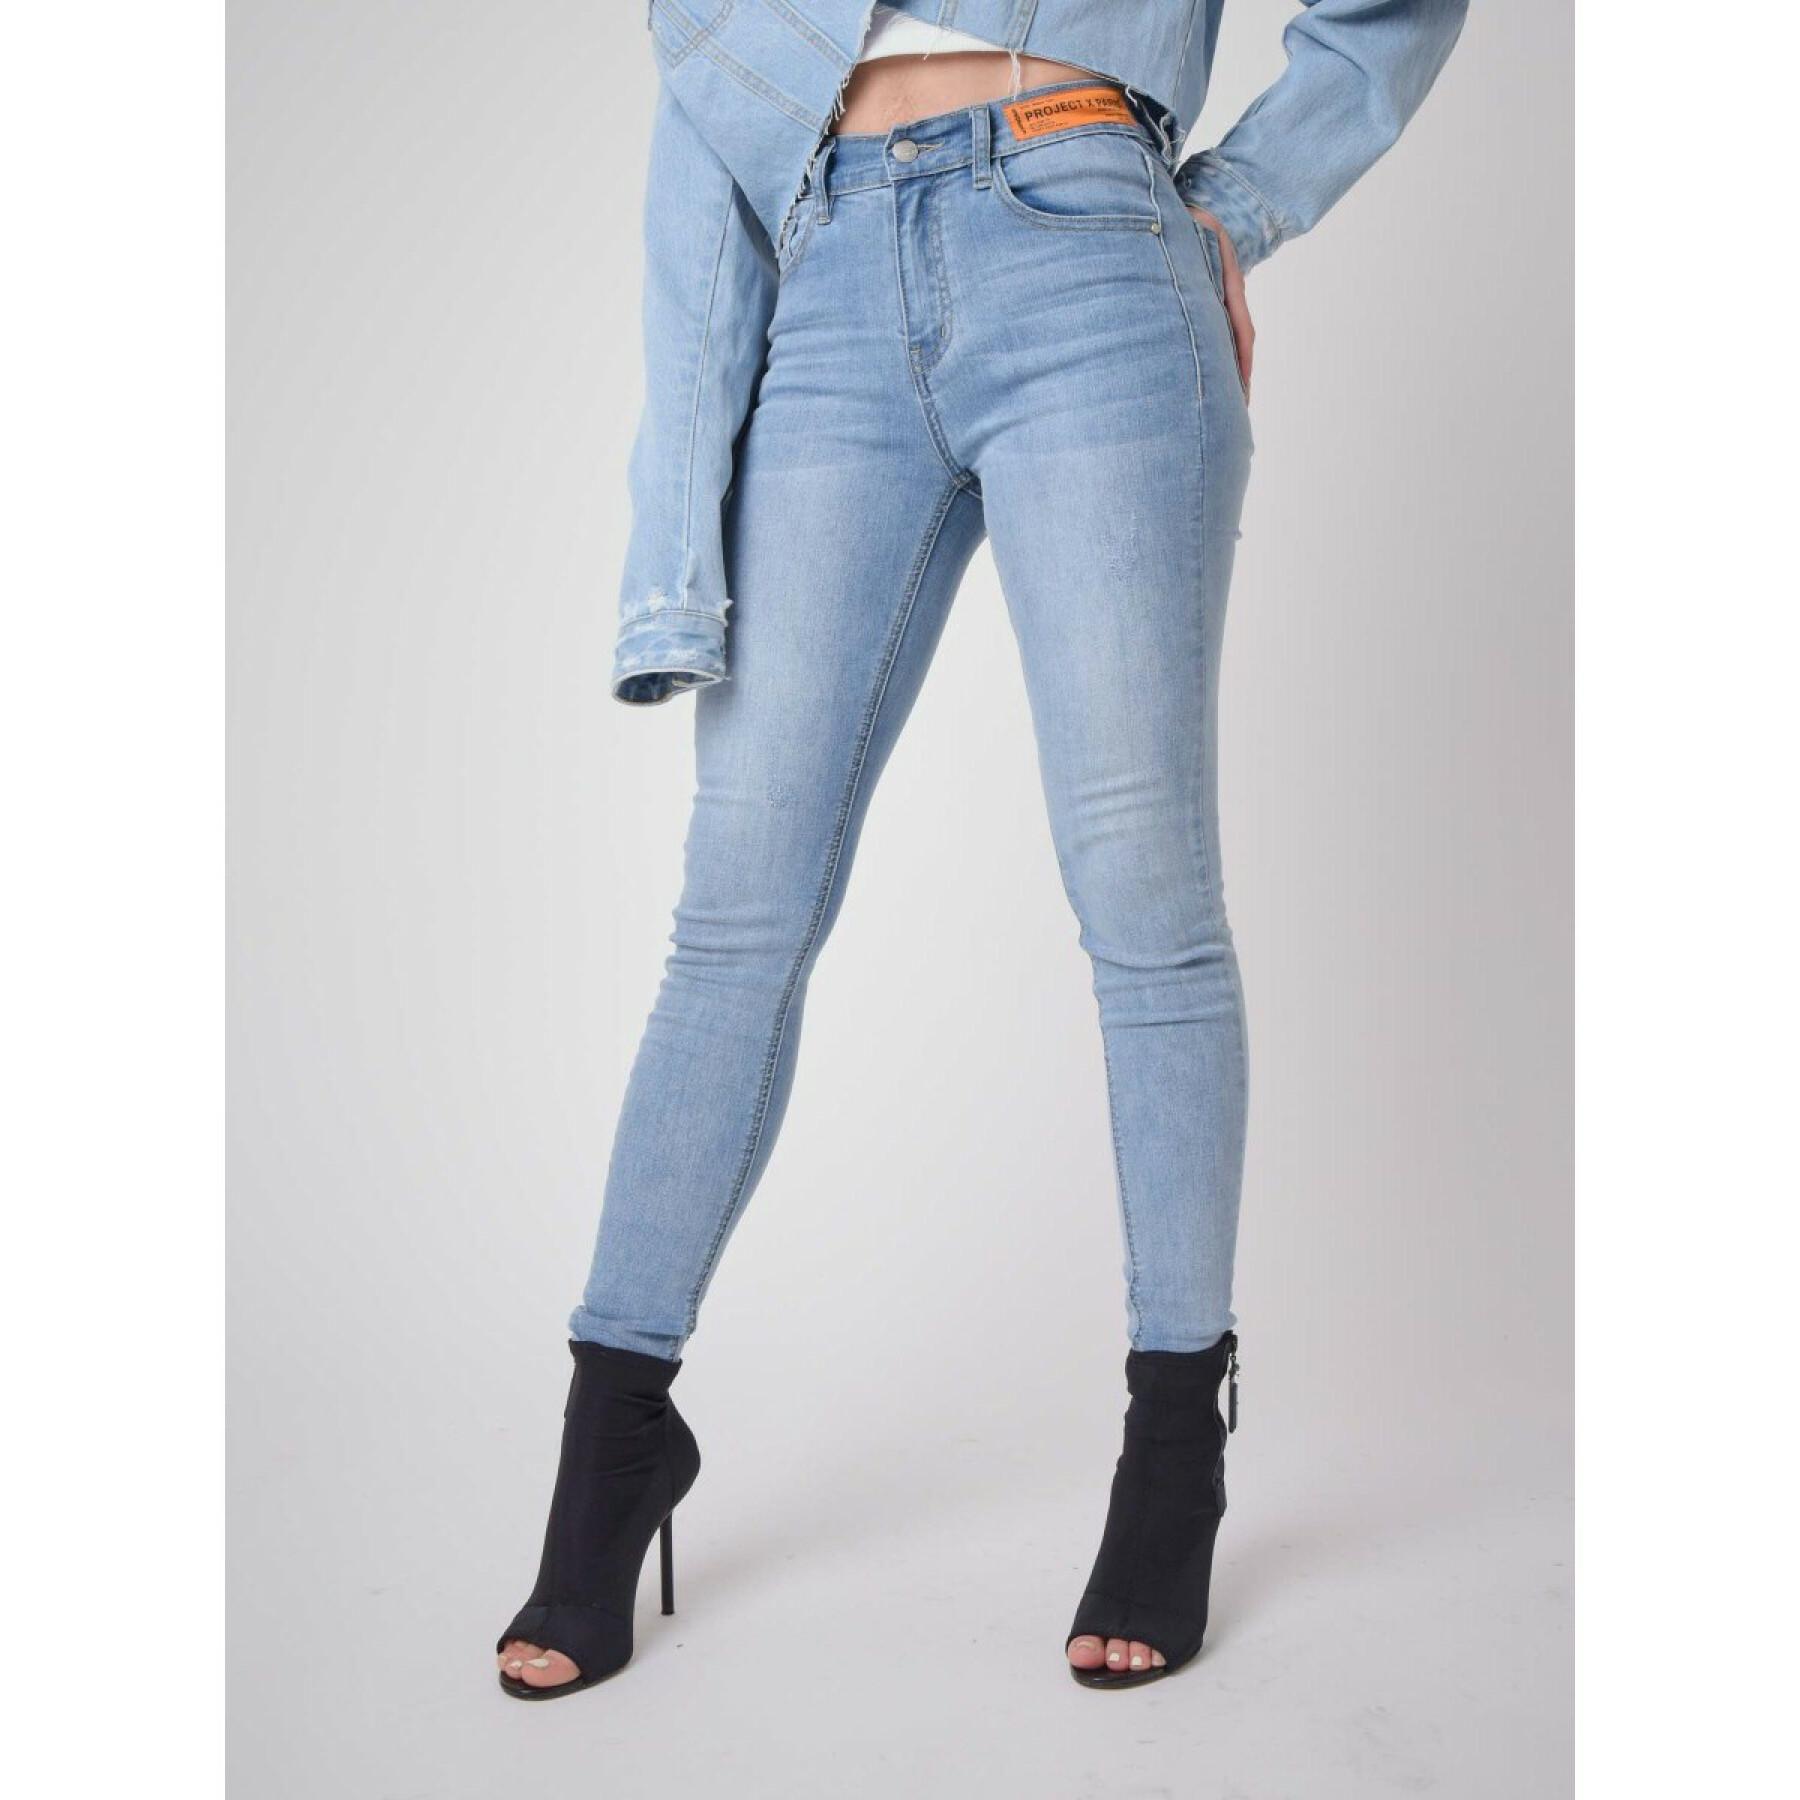 Skinny fit logo jeans label woman Project X Paris